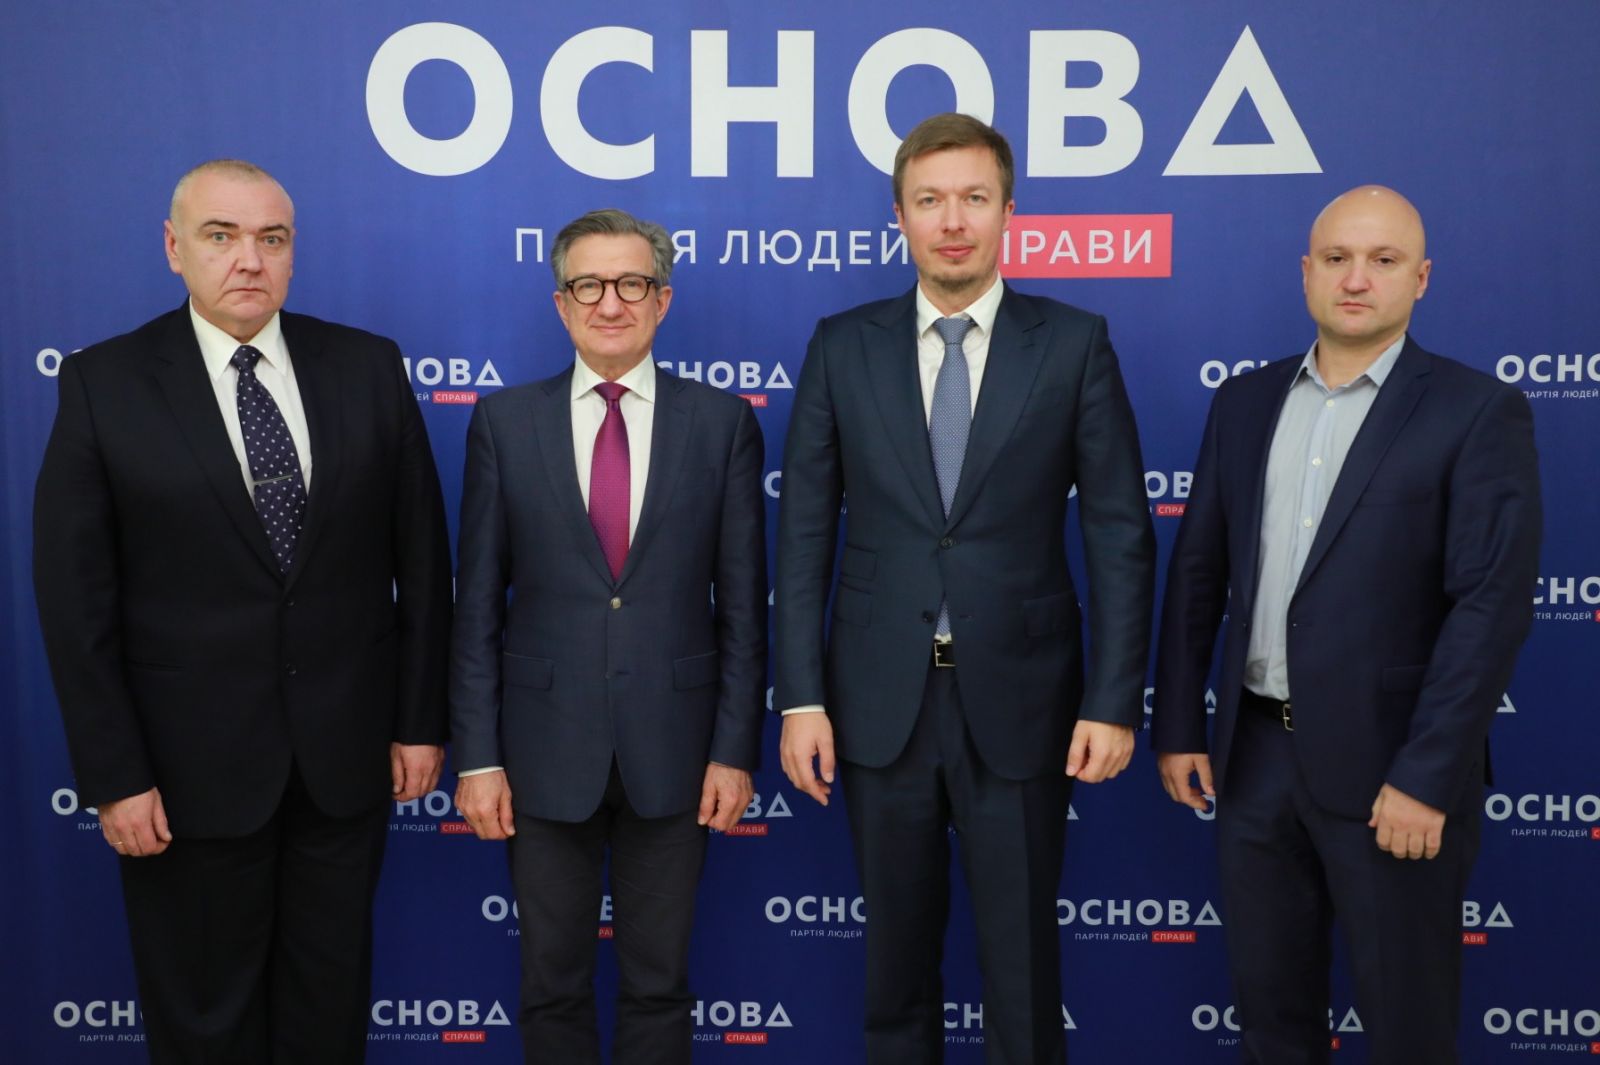 Лидеры ПП «Основа» в Одессе и регионе